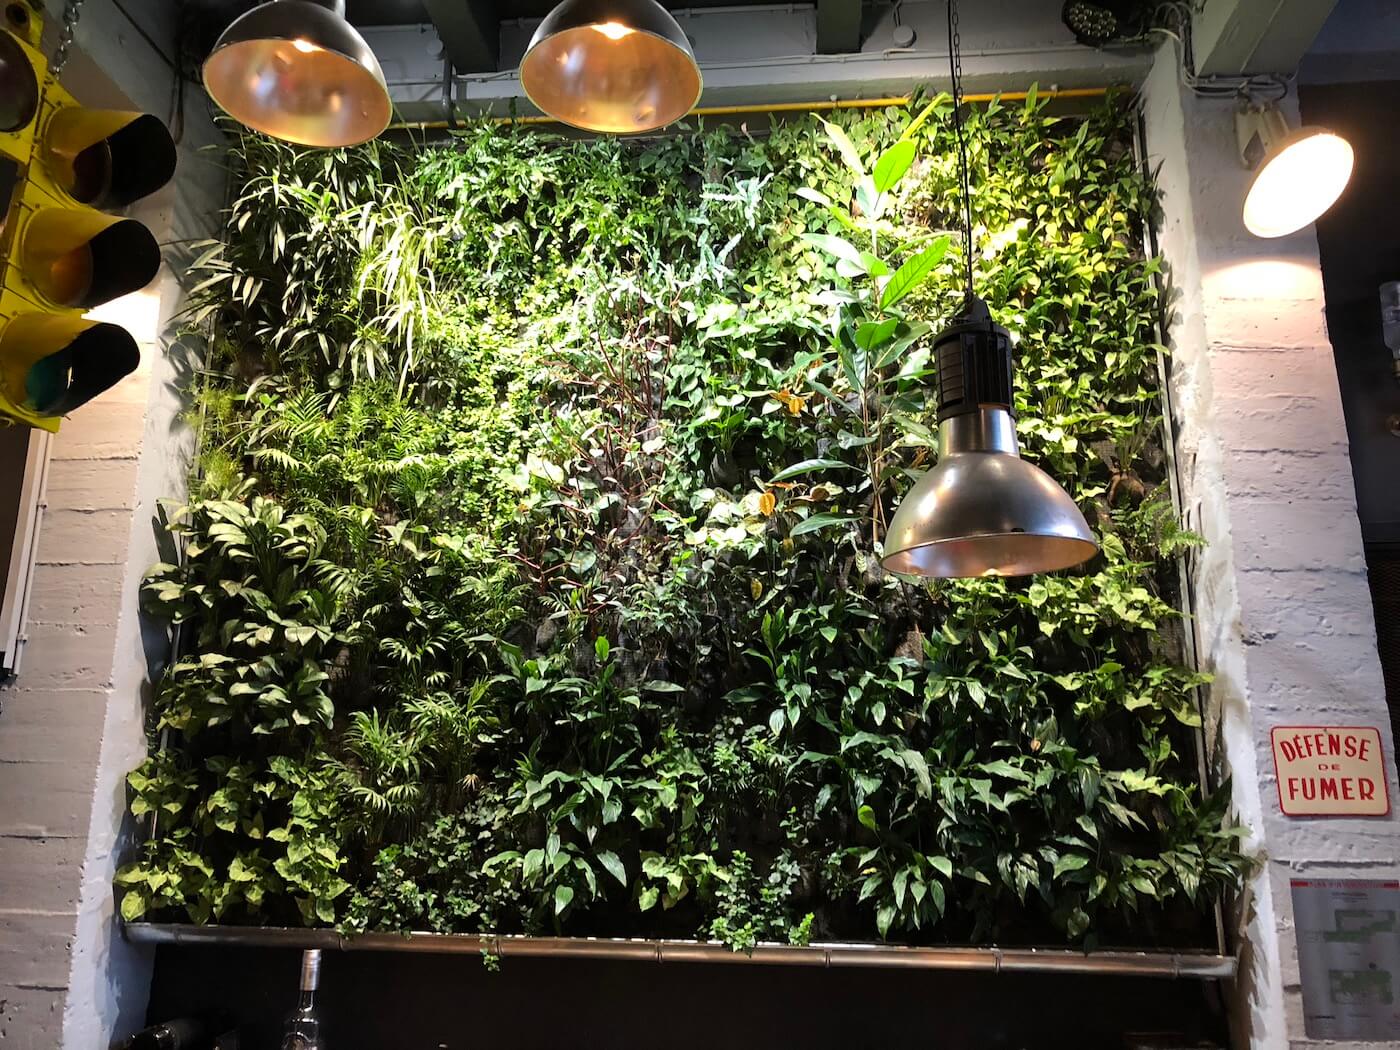 mur végétal que nous avons installé dans un restaurant à la vue des clients